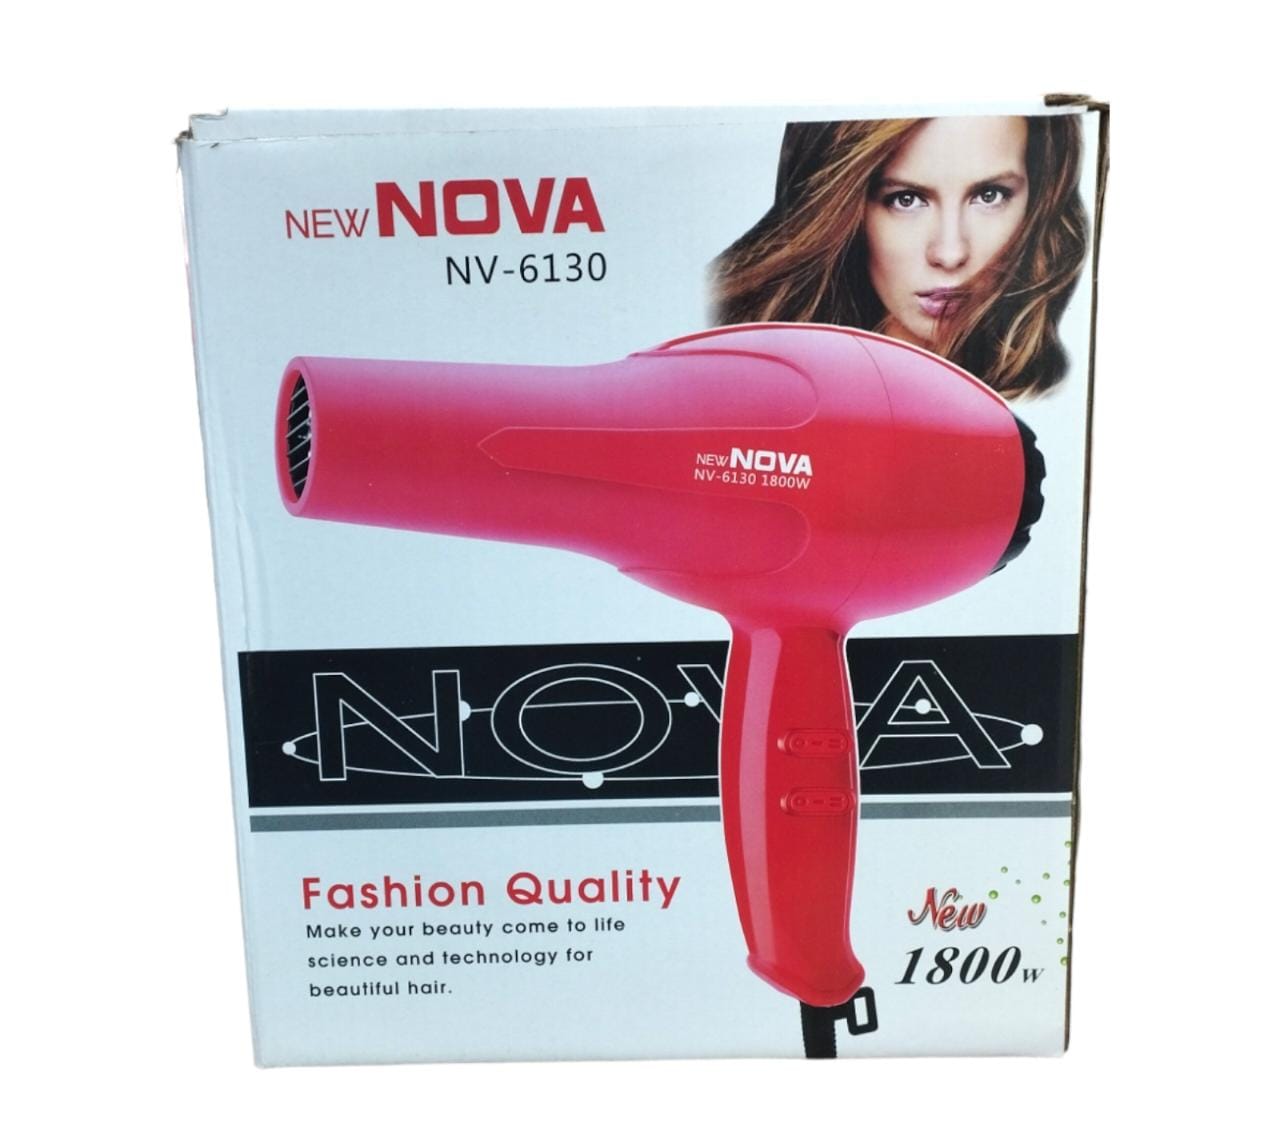 New Nova hair dryer